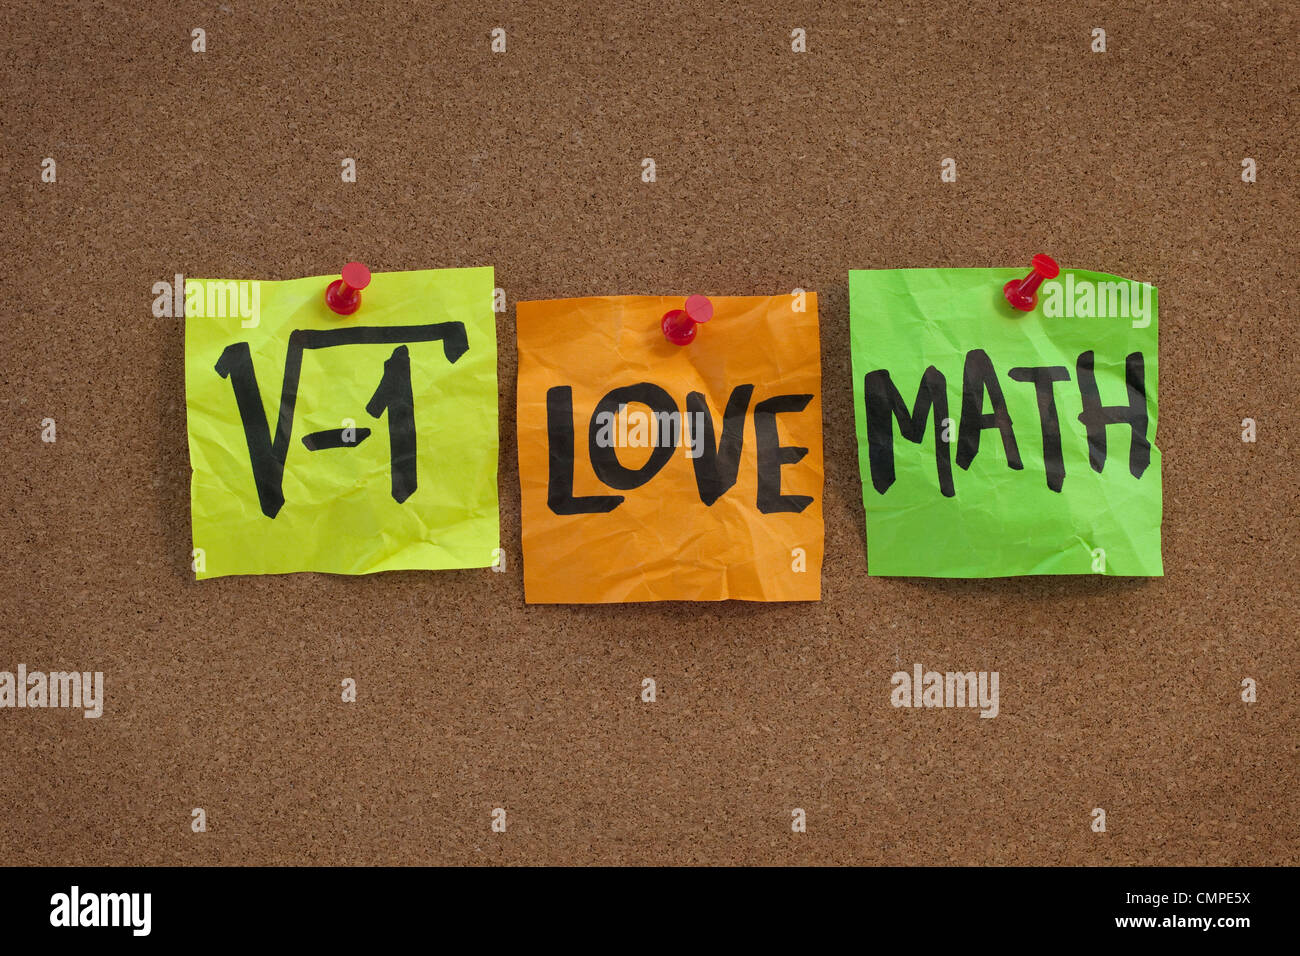 die Quadratwurzel aus negativen Zahl - ich liebe Mathe humorvoll Konzept, bunte Haftnotizen, Handschrift auf Kork-Pinnwand Stockfoto